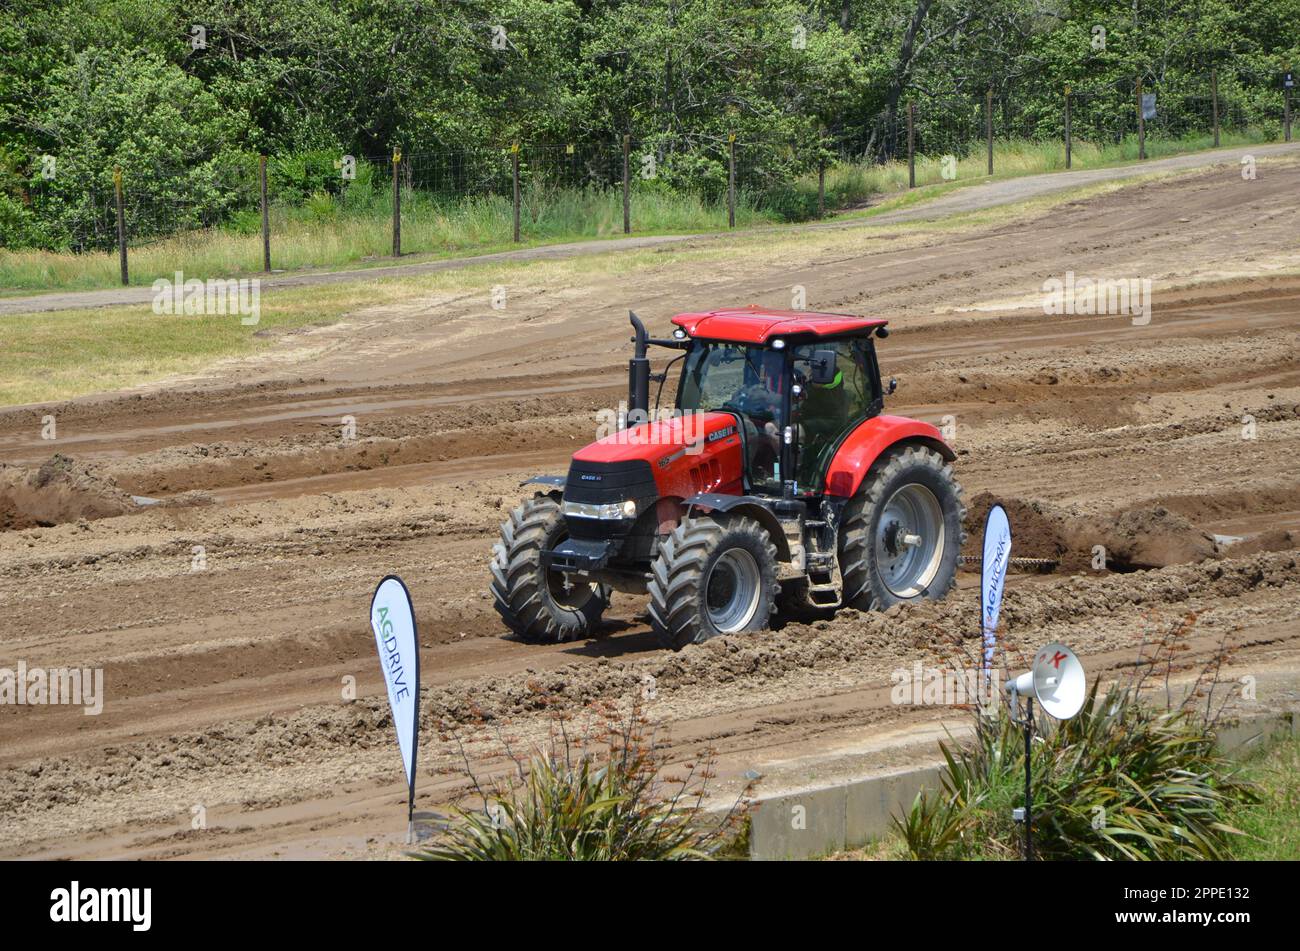 Case 11 Red Tractor Bei Feildays Tractor Pull Races. Fieldays ist das größte landwirtschaftliche Event der südlichen Hemisphäre. Stockfoto